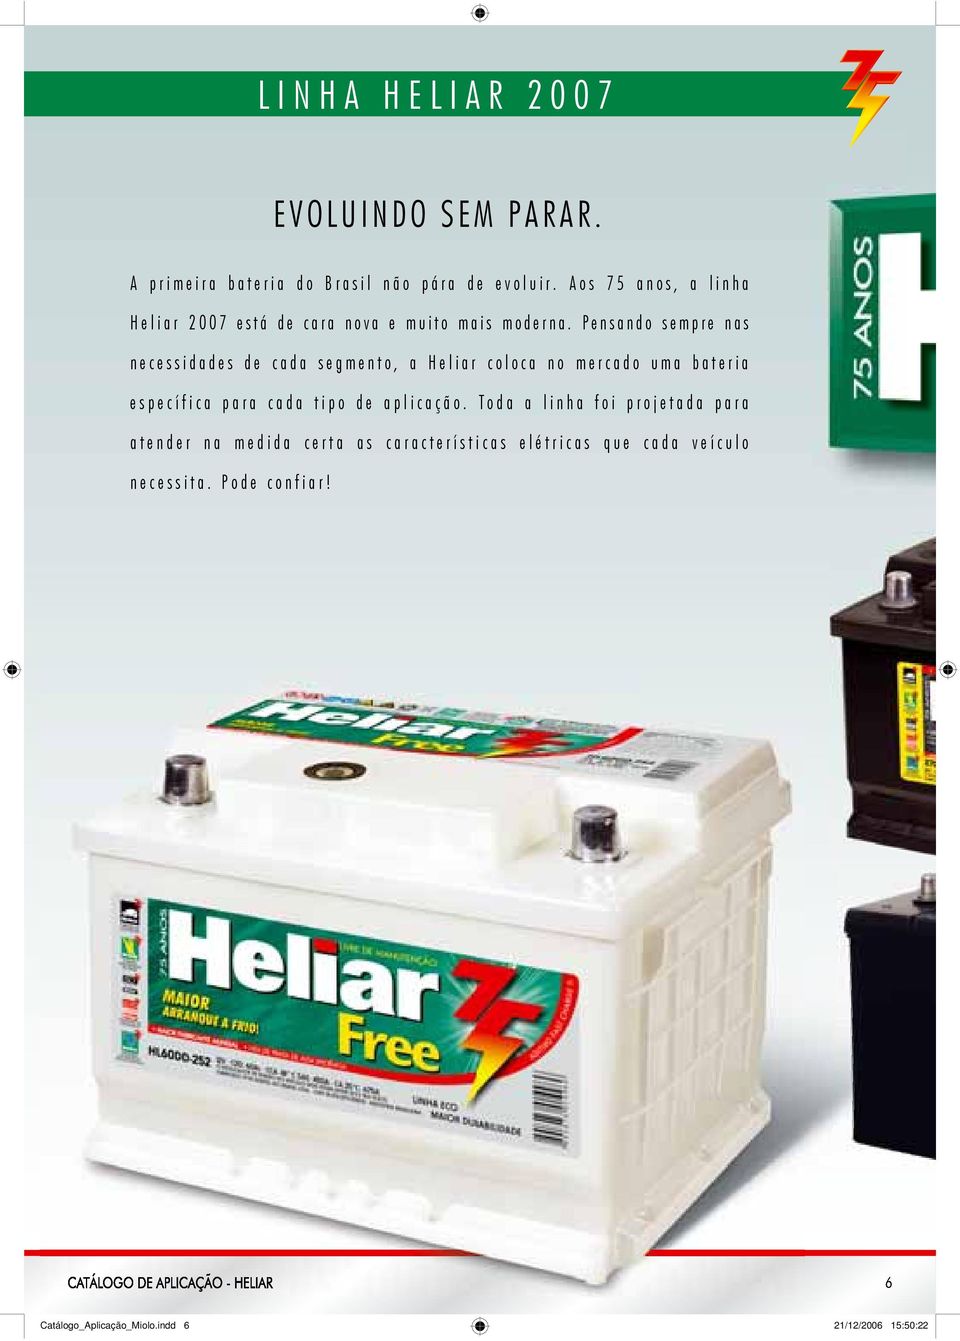 Pensando sempre nas necessidades de cada segmento, a Heliar coloca no mercado uma bateria específica para cada tipo de